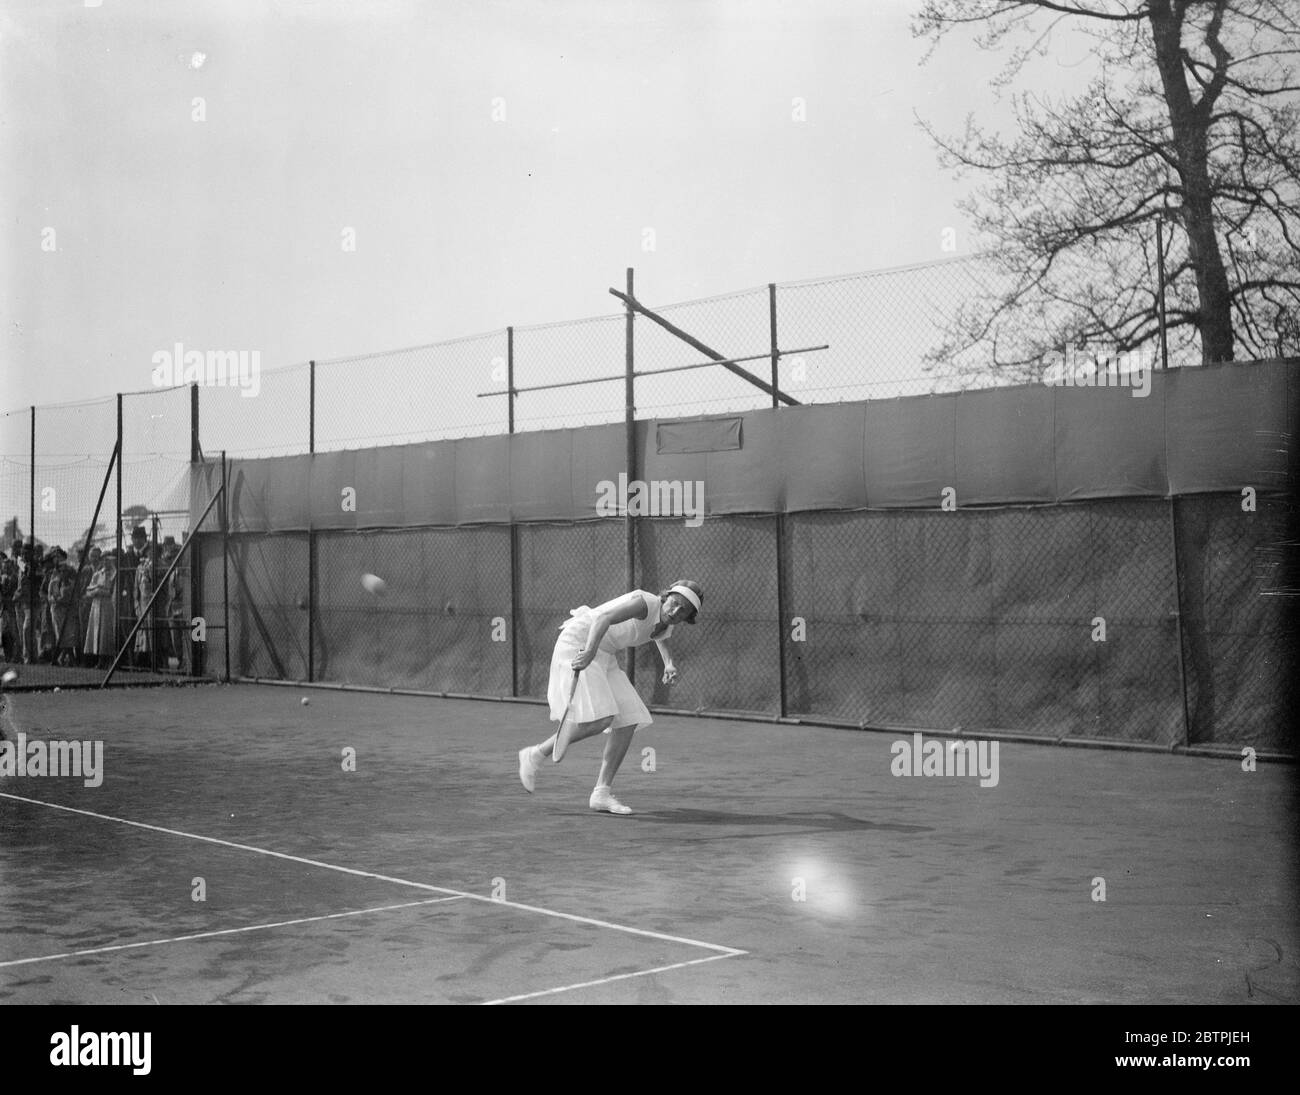 Tournoi de Bournmouth Hard court . Mme Fearnley Whittingstall en jeu contre Mme H C H Hopman dans le tournoi de tennis en terrain dur de Bournemouth . 30 avril 1934 Banque D'Images